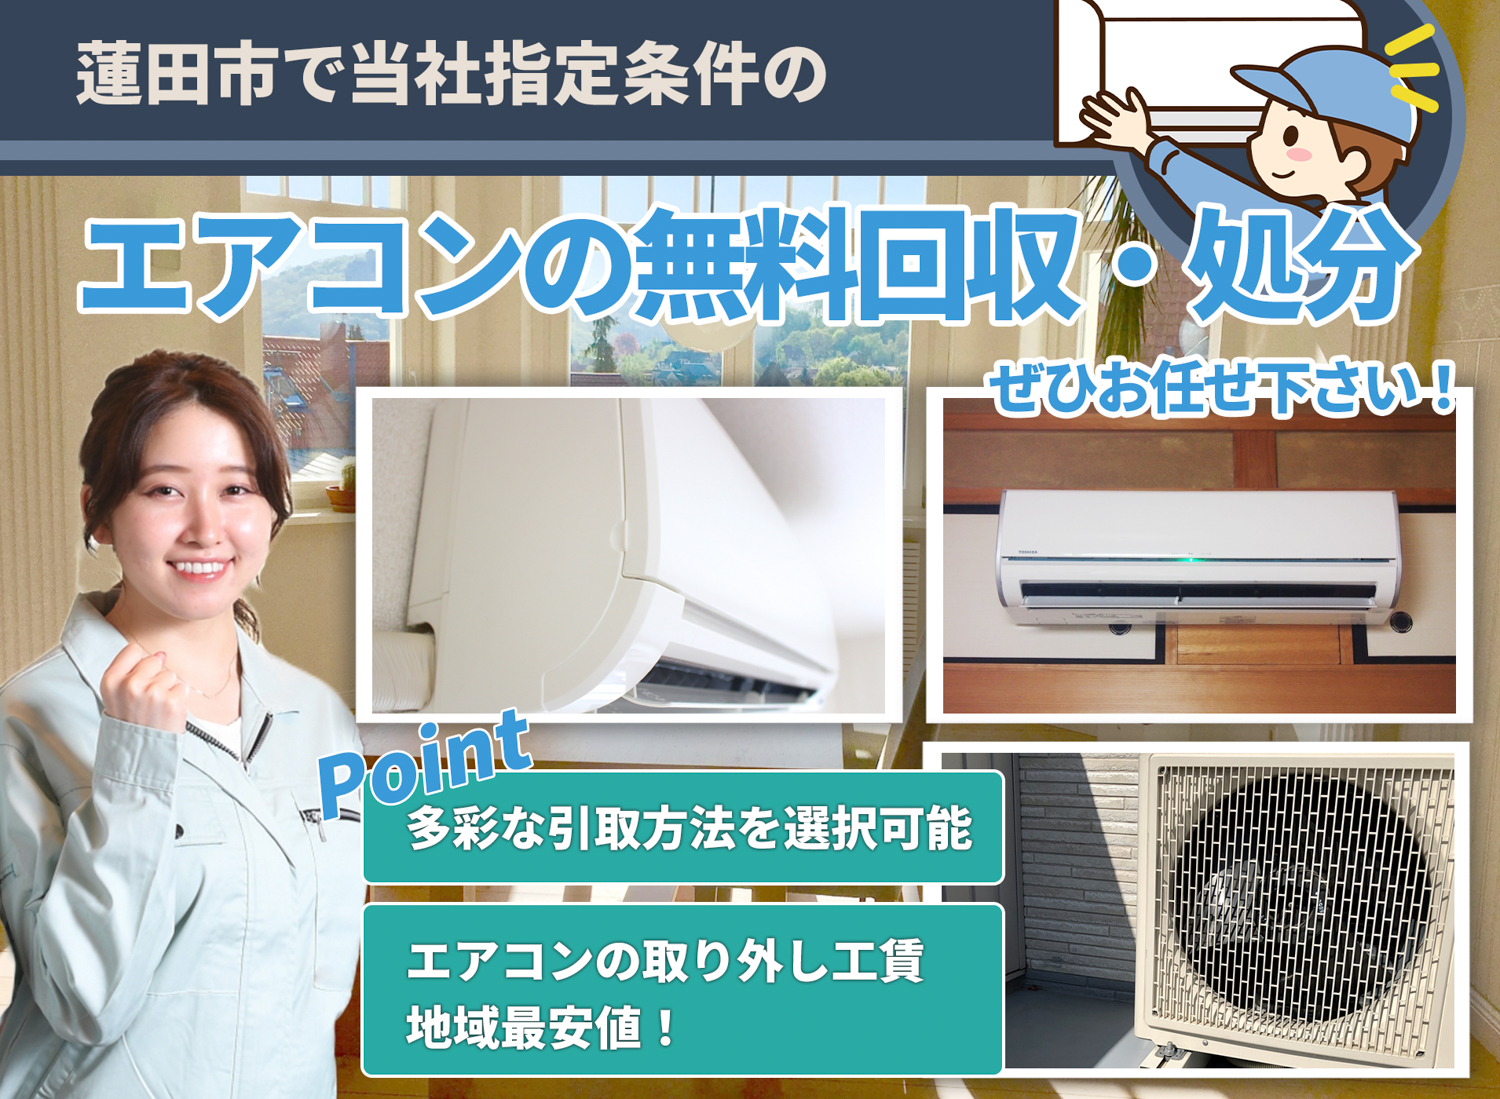 蓮田市のサービスで地域一番を目指すエアコン無料回収処分隊のエアコン無料回収サービス